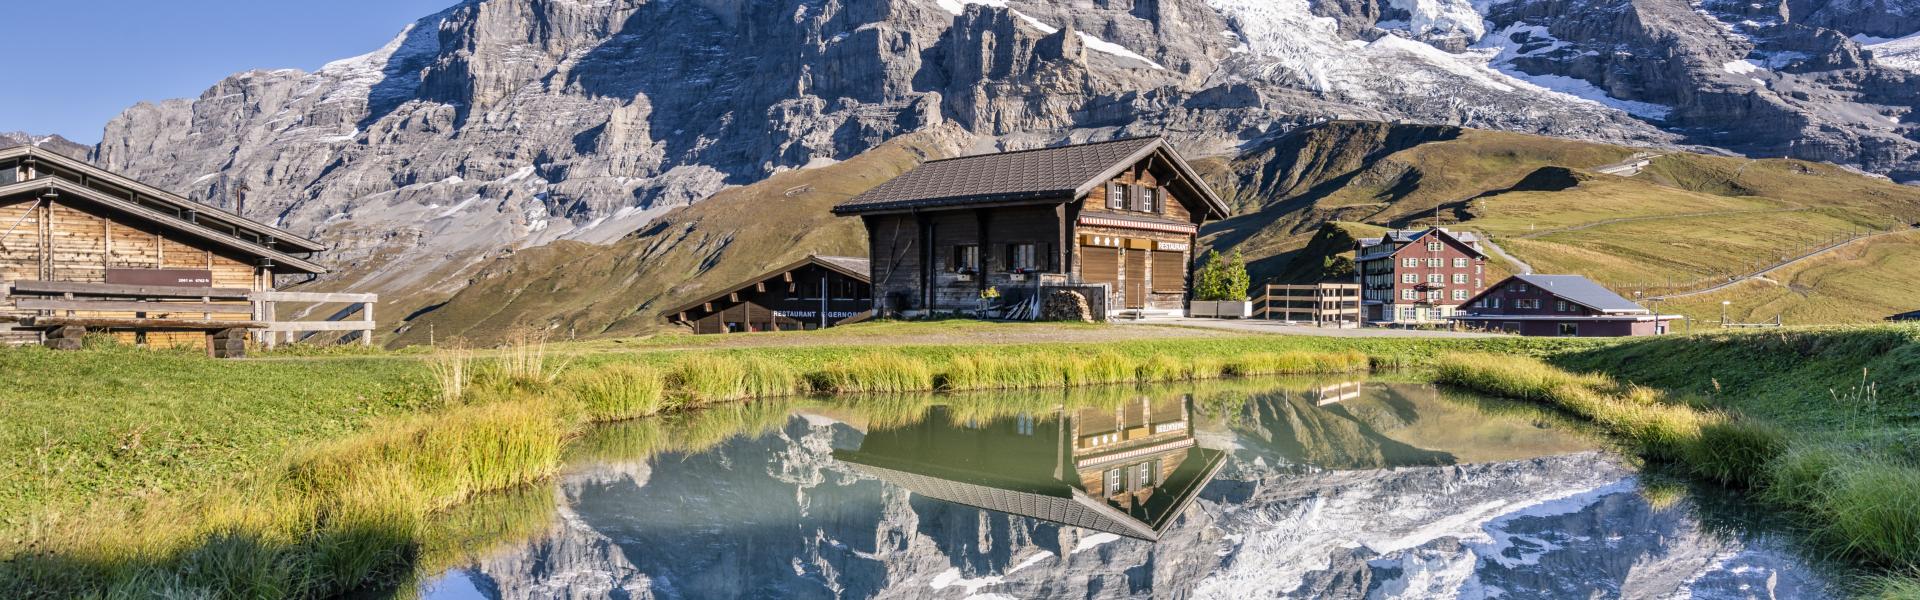 Appartamenti e case vacanze nelle Alpi in affitto - CaseVacanza.it